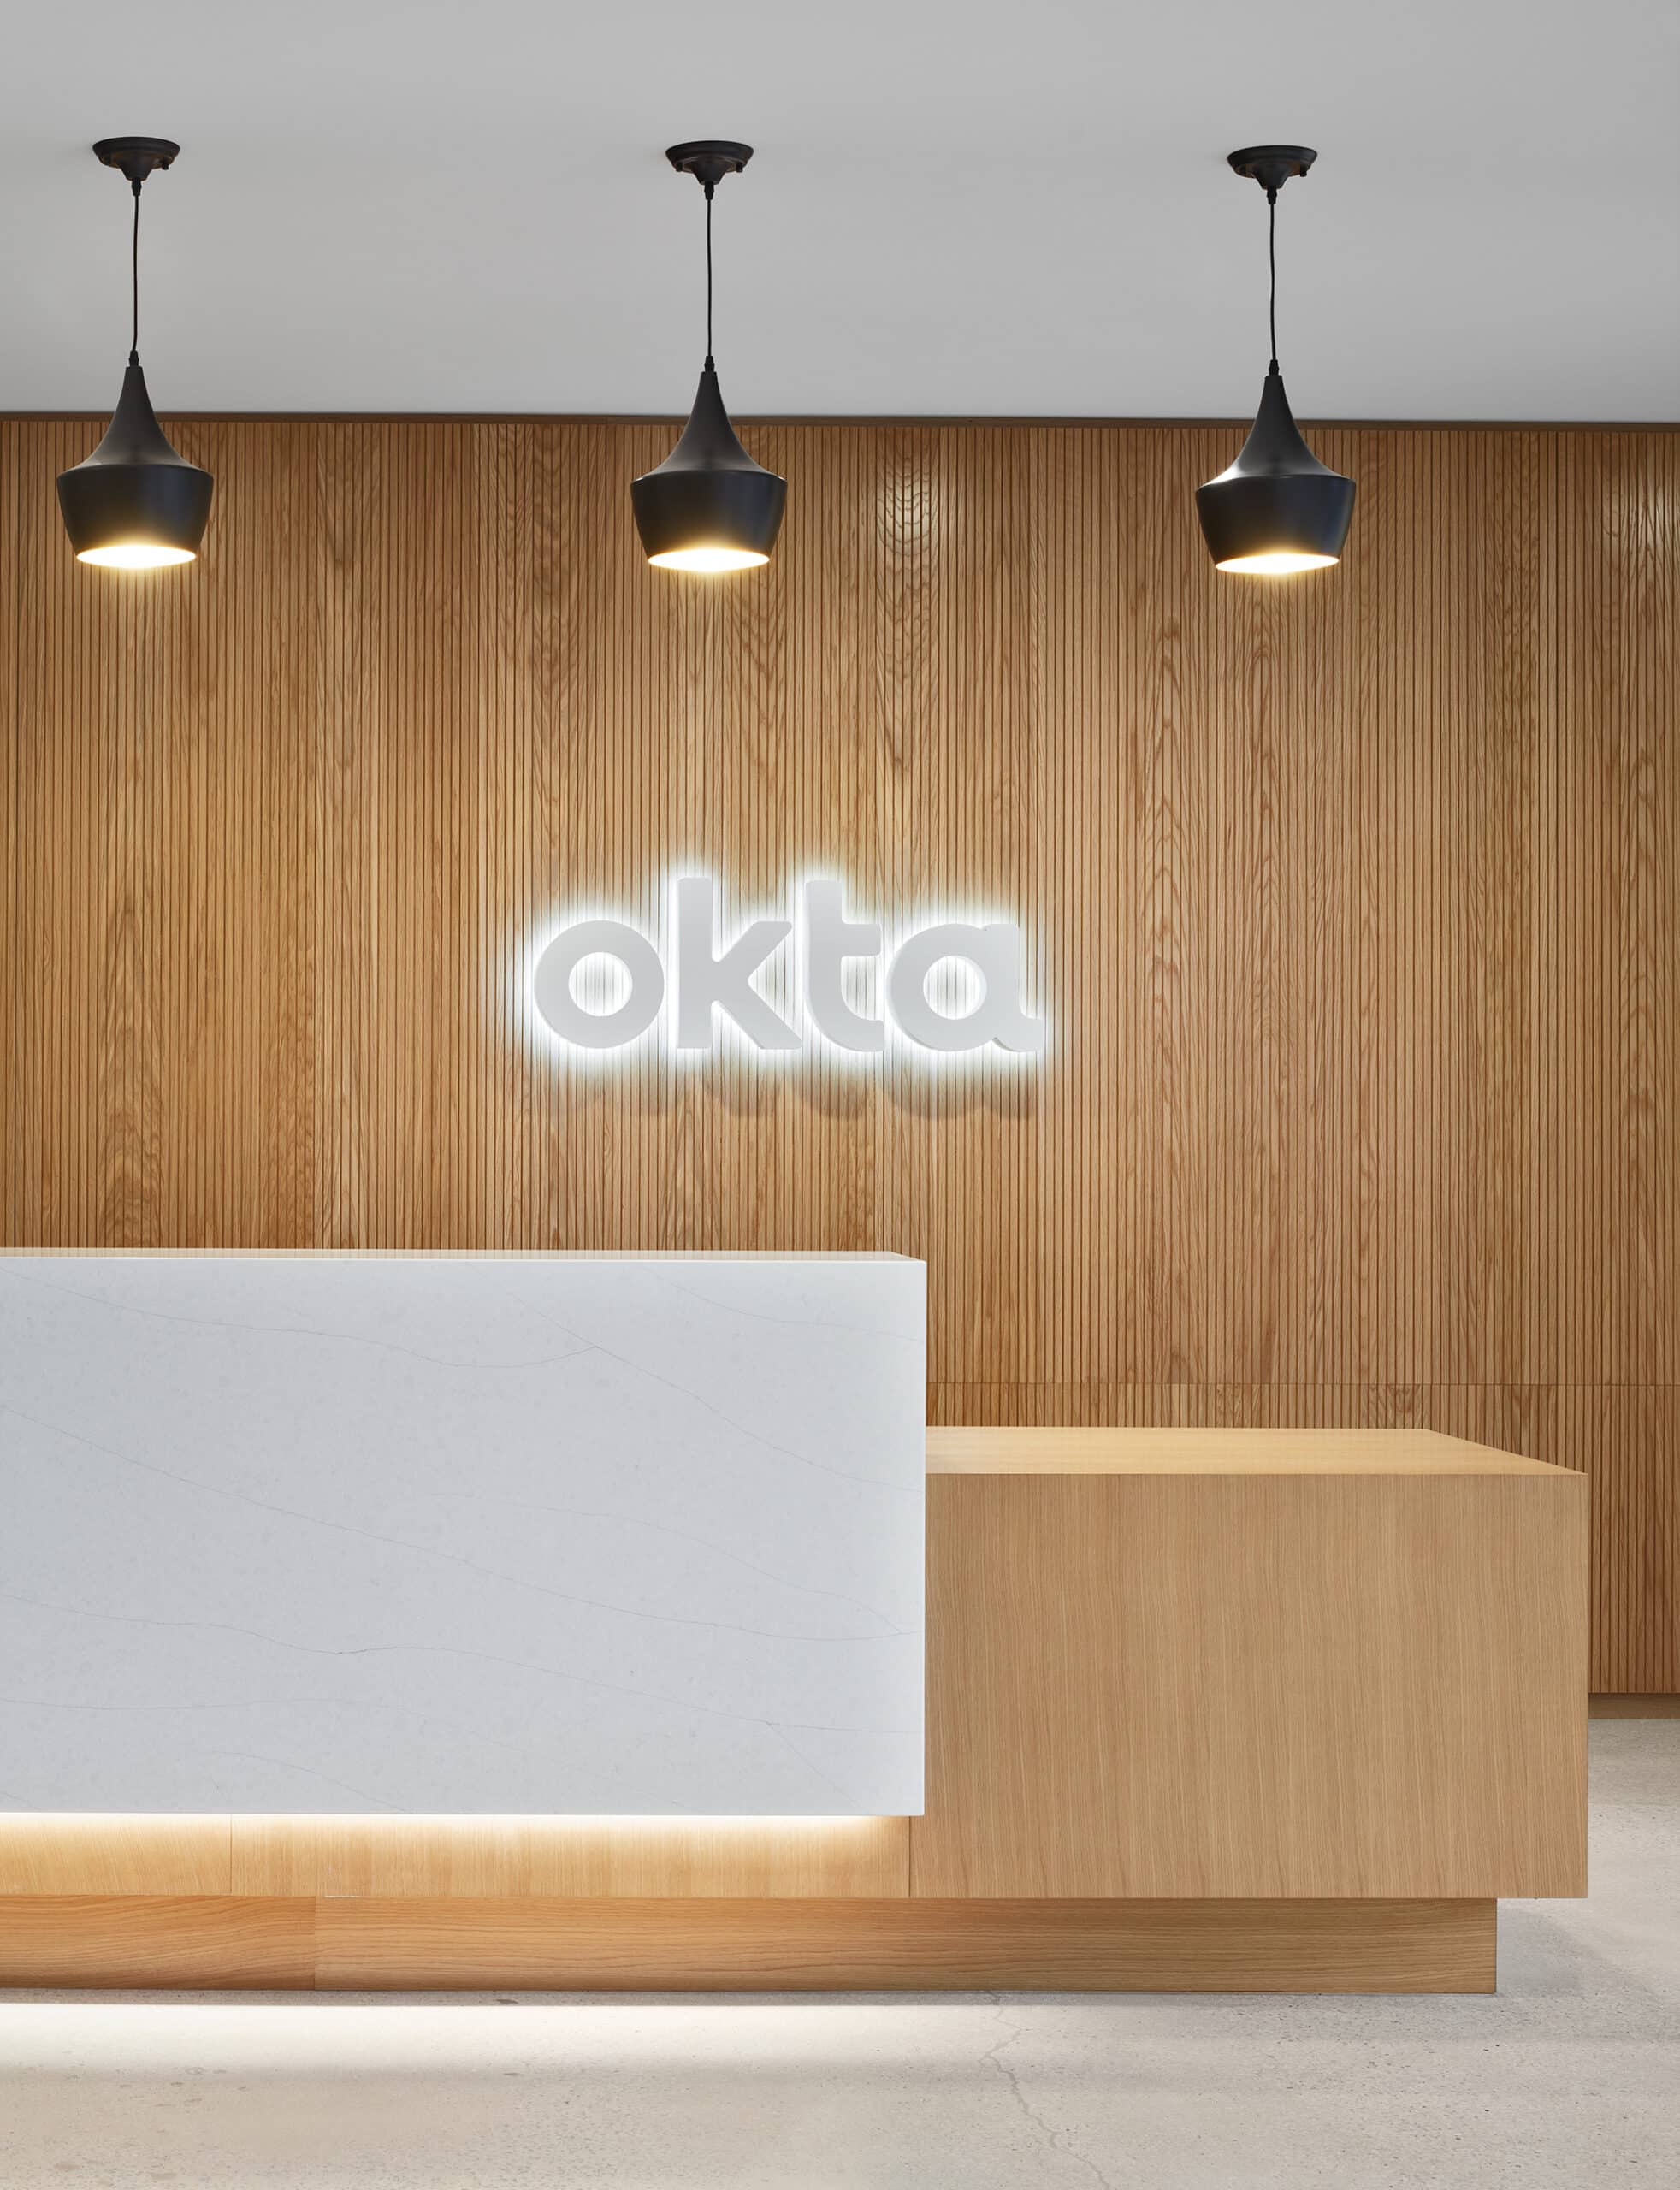 Image for Okta